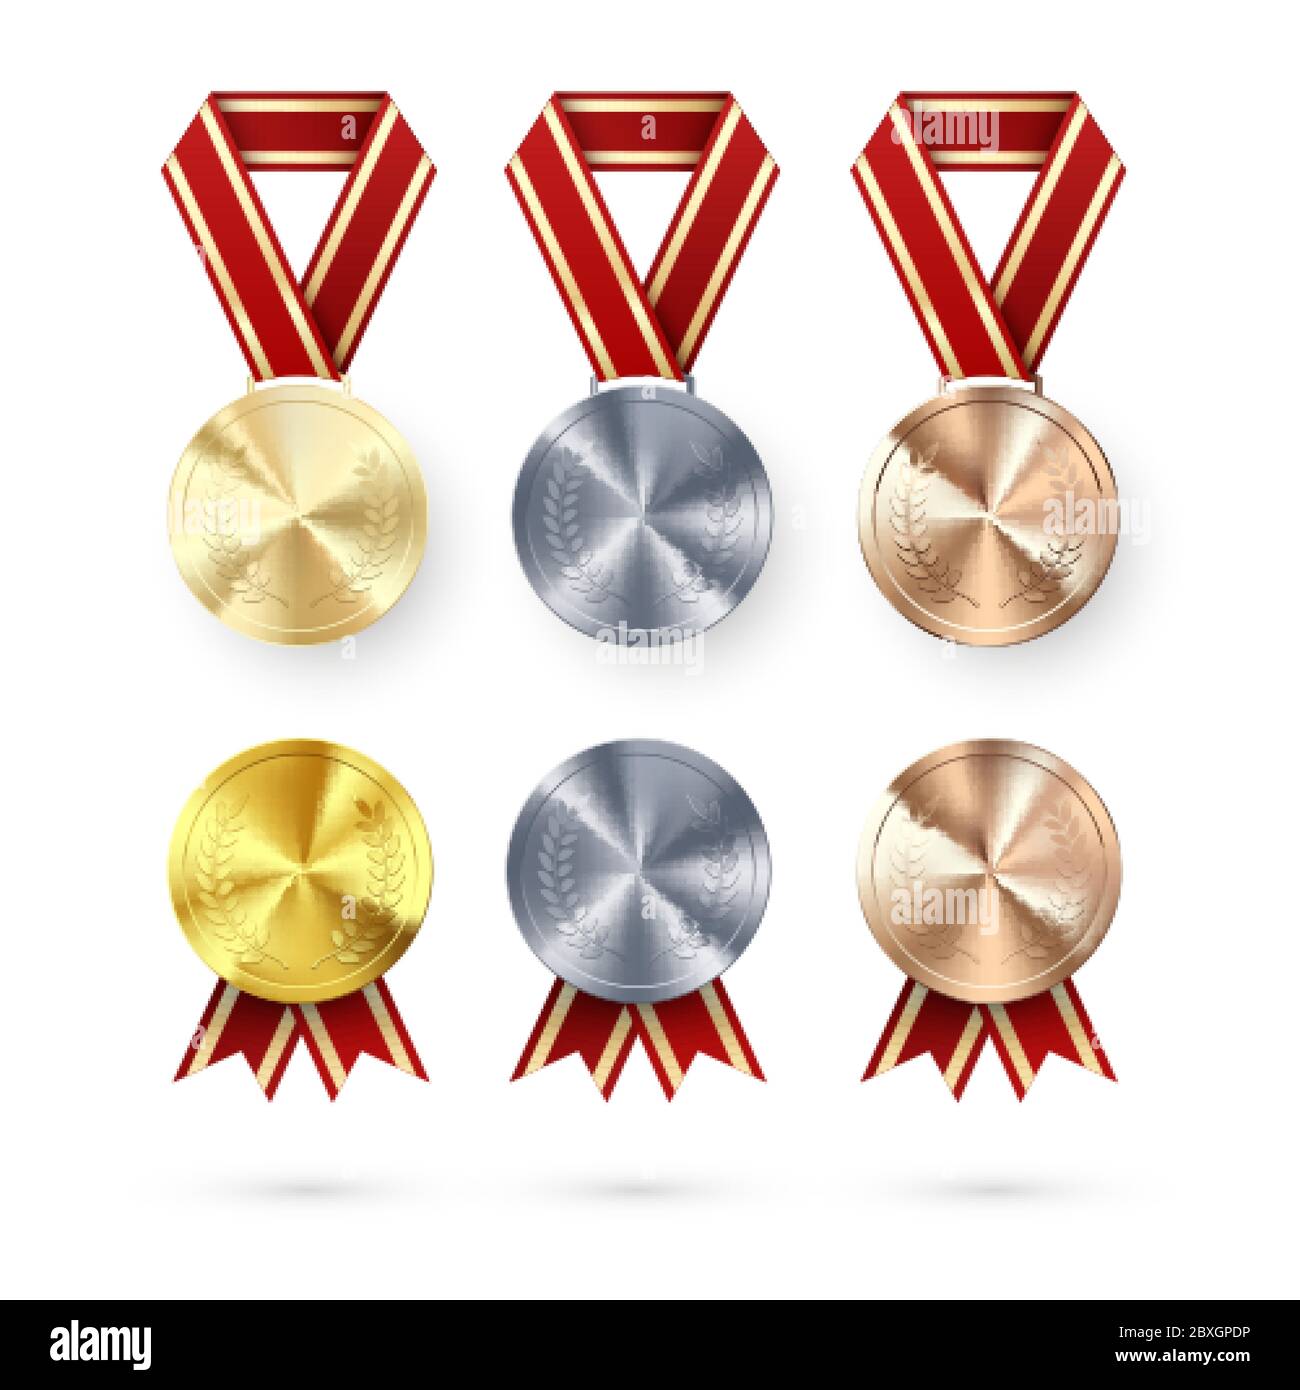 Medaglia d'argento e bronzo con alloro appeso al nastro rosso. Premio simbolo di vittoria e successo. Medaglie impostate. Illustrazione vettoriale Illustrazione Vettoriale